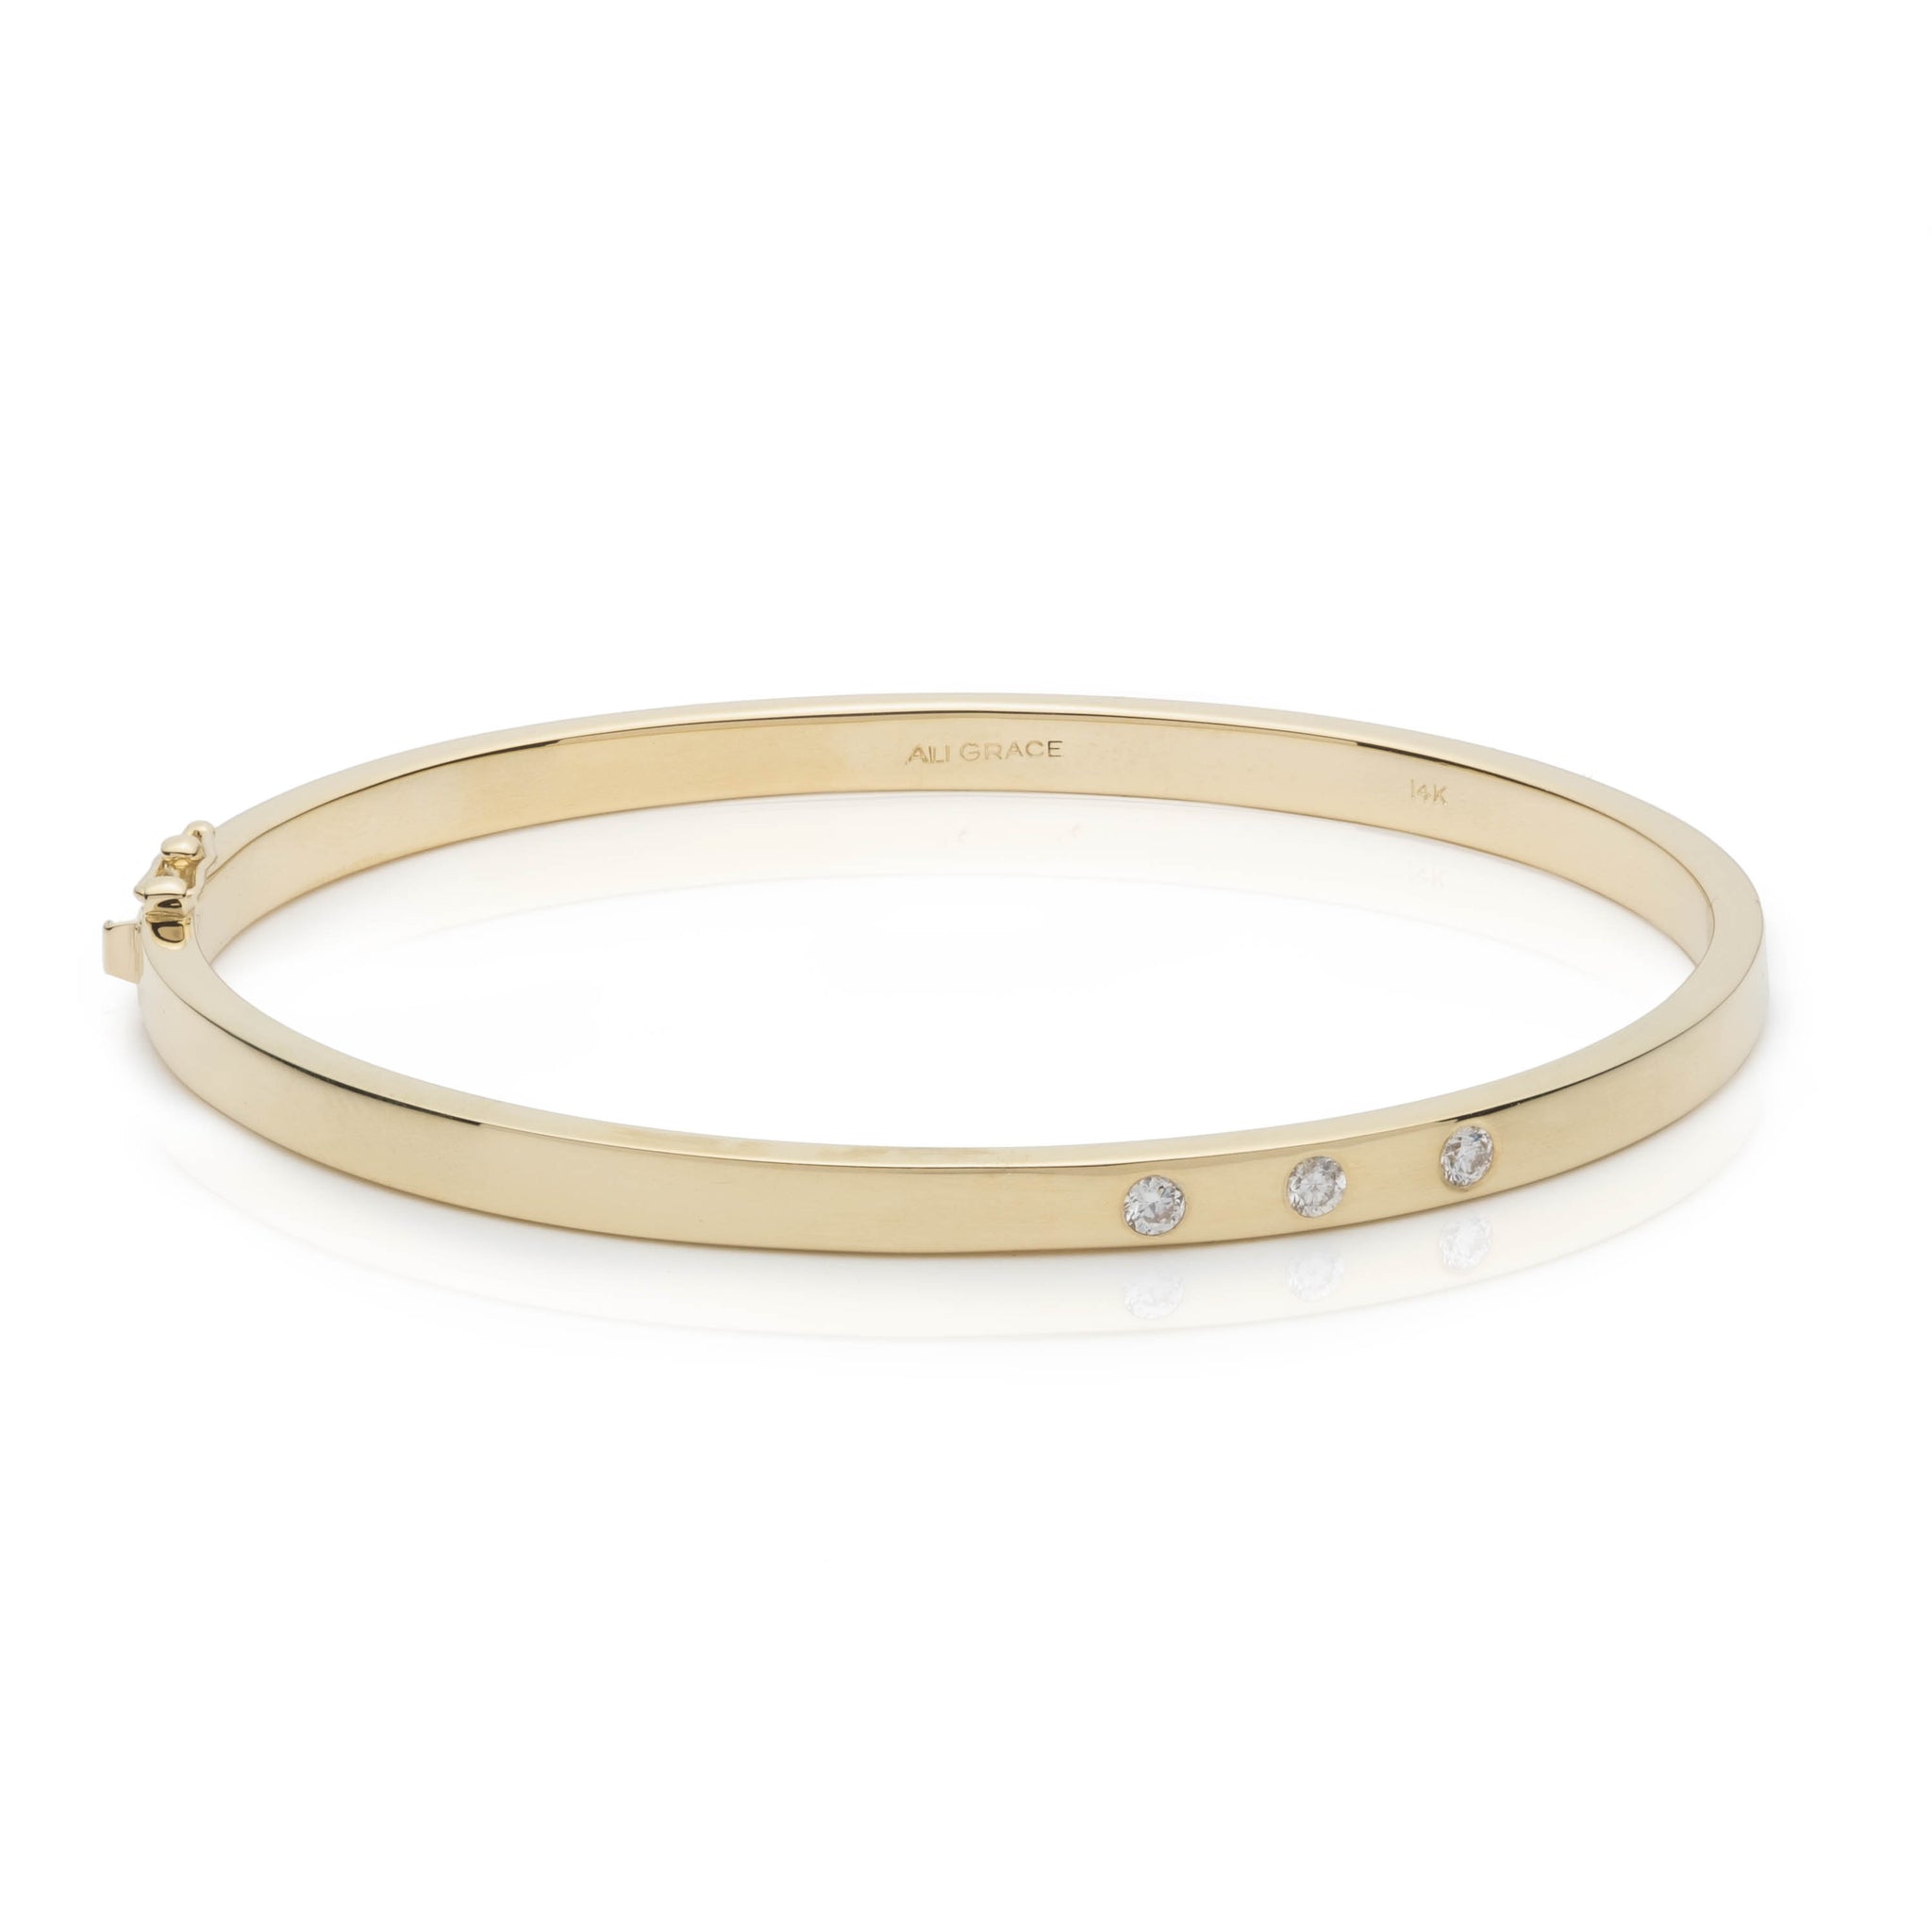 gold bracelet like cartier love bracelet diamond bracelet family heirloom